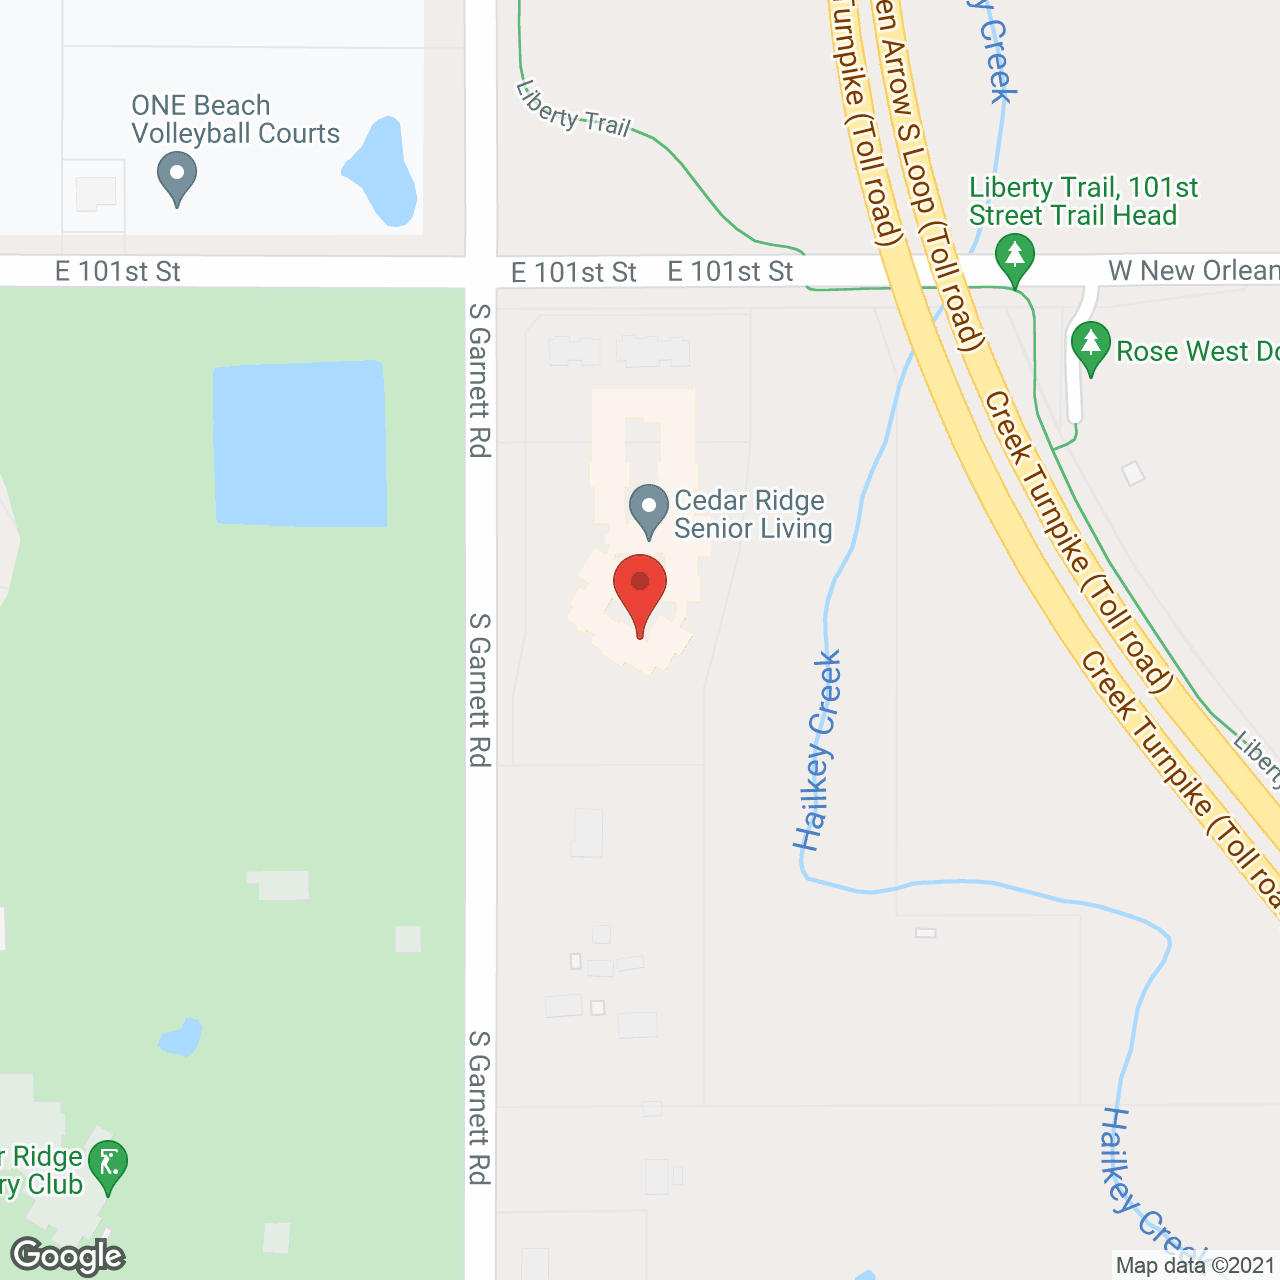 Cedar Ridge in google map